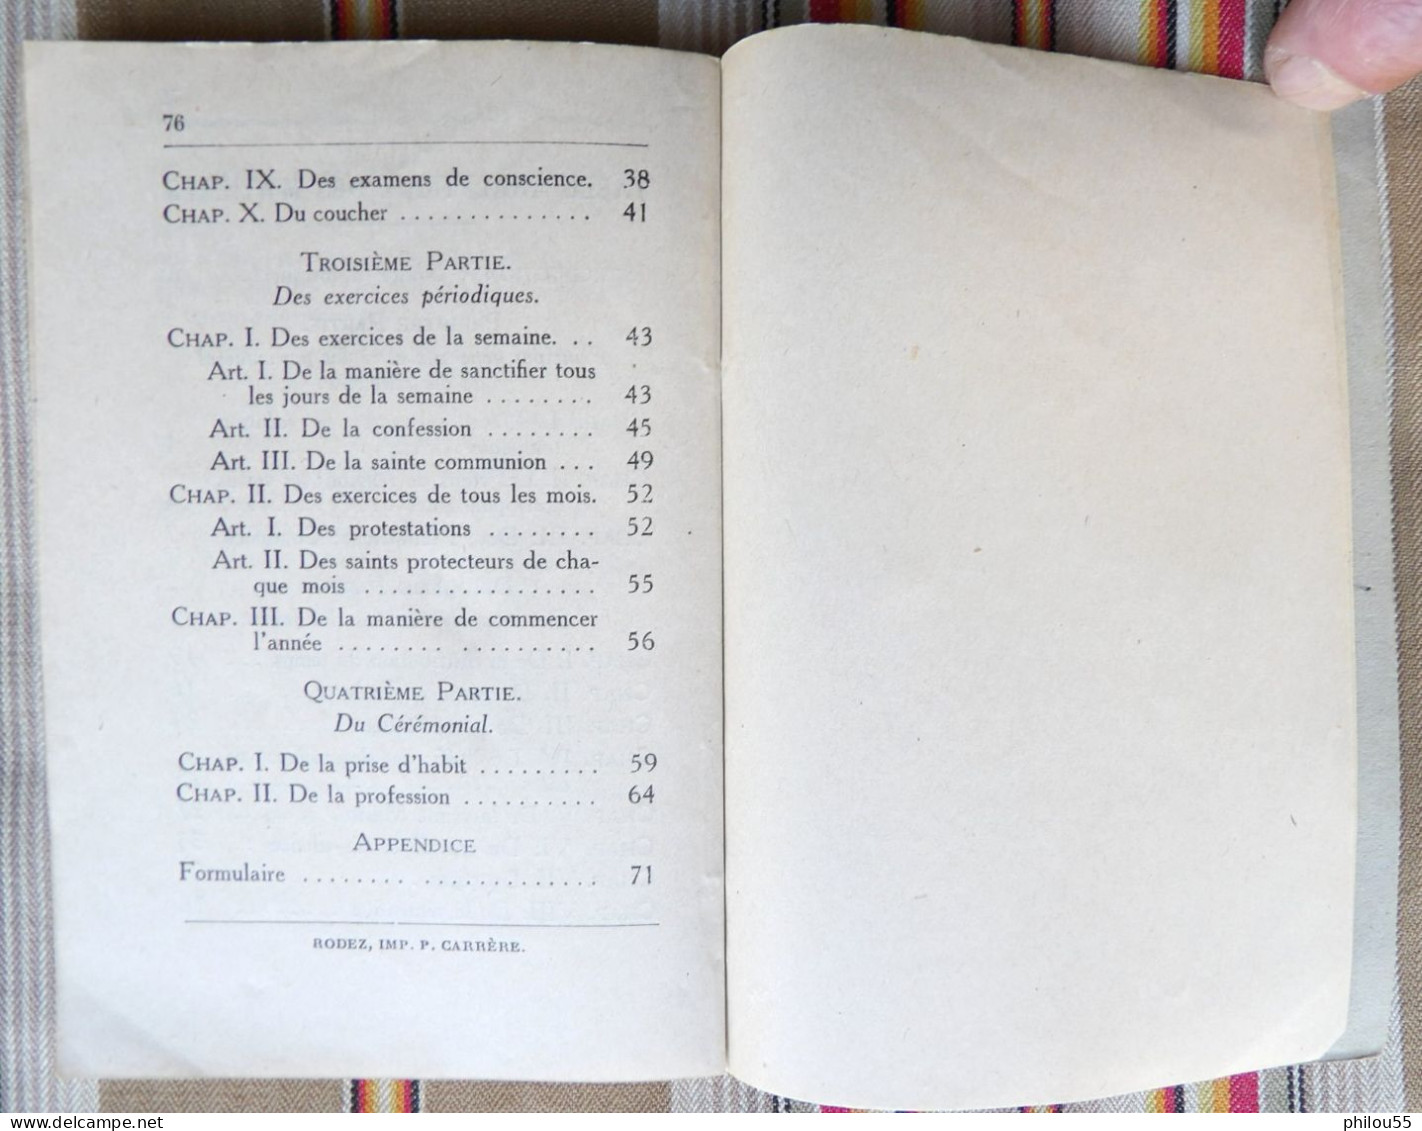 12 RODEZ CARRERE Constitutions des Soeurs de St Joseph d'Estaing DIOCESE DES RODEZ 1932